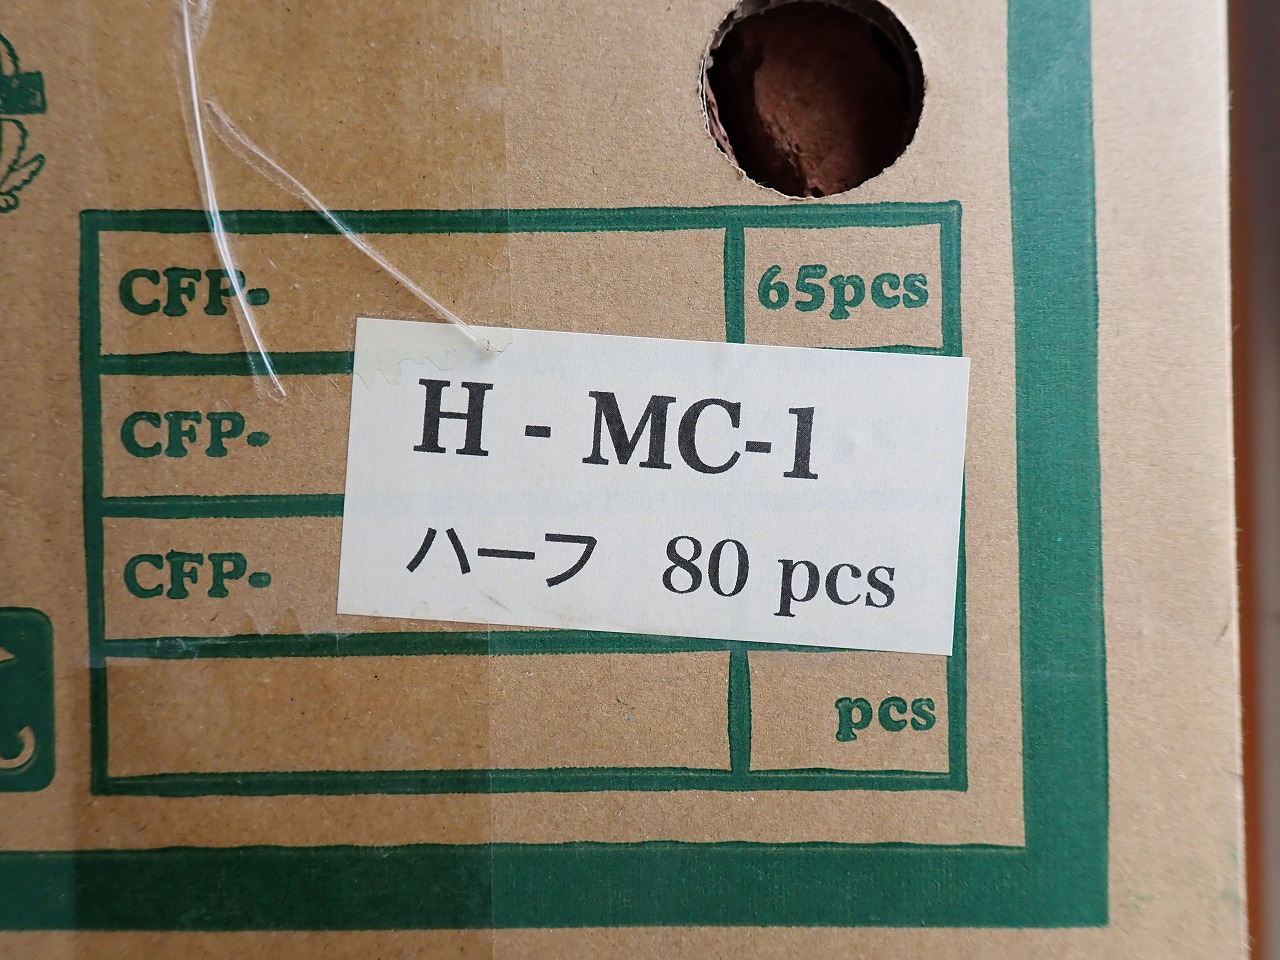 CFP-H-MC1